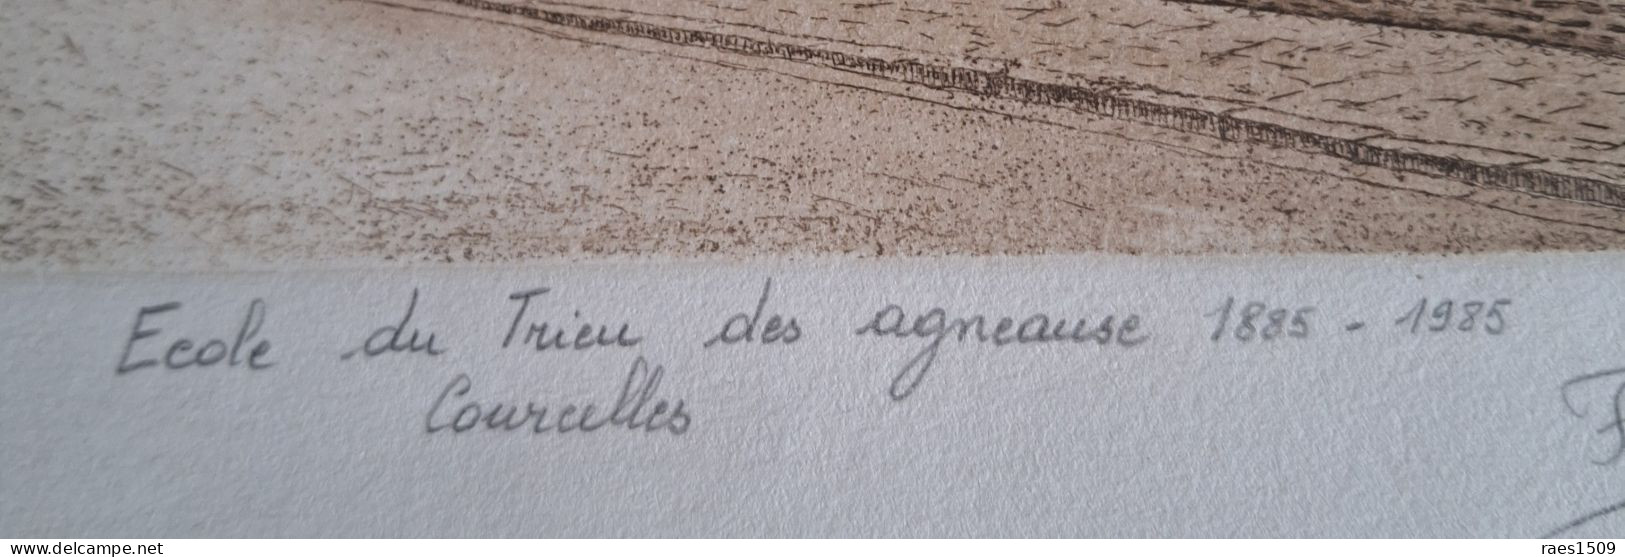 Eau Forte De L'école Du Trieu Des Agneaux De Courcelles  1885-1985 Signer Par L'auteur Et N°48/100 - Verzamelingen